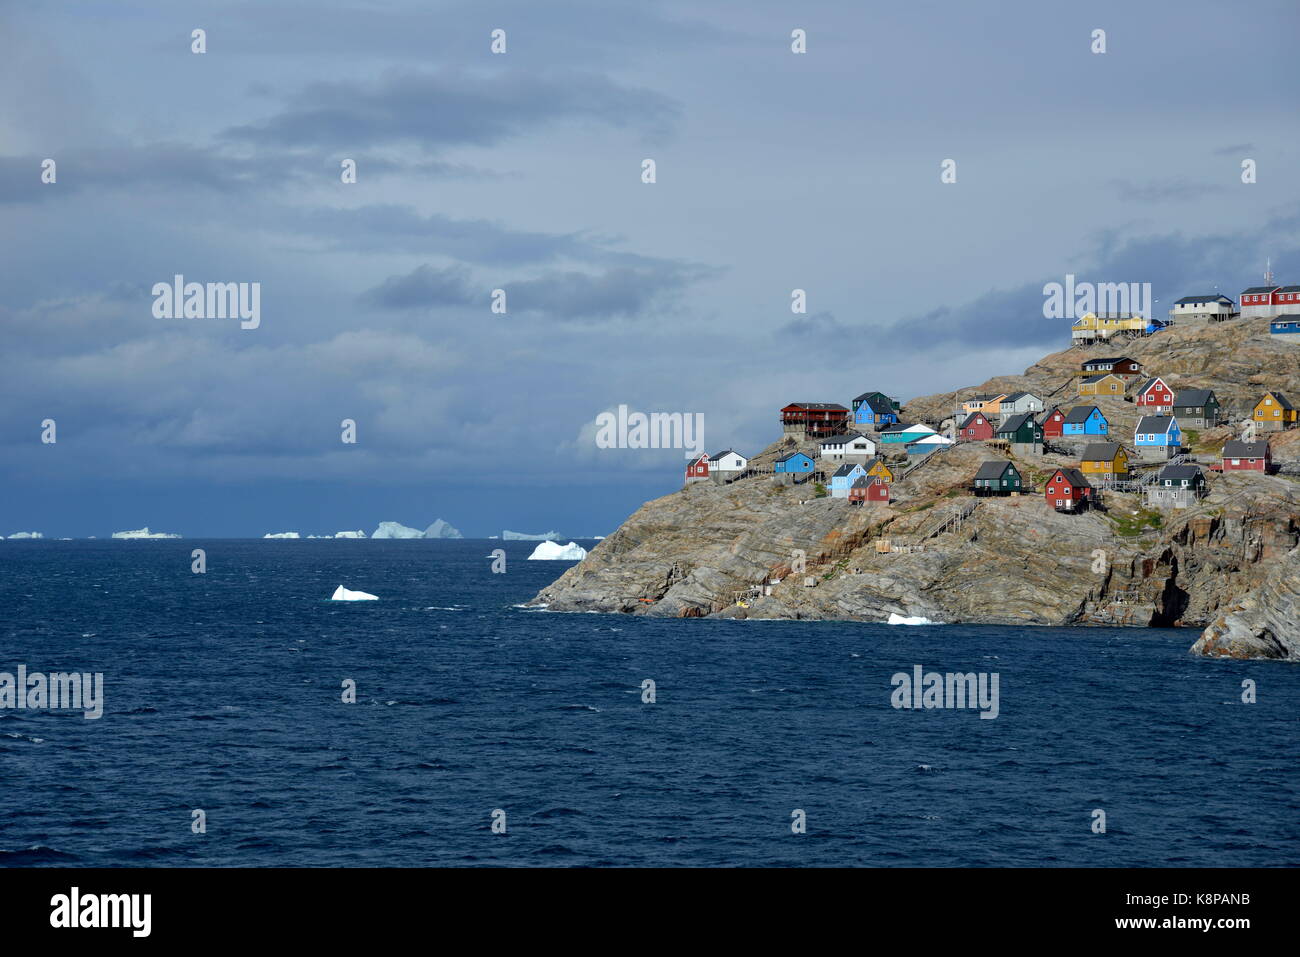 Vue sur la petite ville d'Uummannaq situés sur une île rocheuse, dans le fjord du même nom, à environ 500 kilomètres au nord du cercle polaire sur la côte ouest du Groenland. prises 20.08.2017. photo : karlheinz schindler/dpa-zentralbild/zb | conditions dans le monde entier Banque D'Images